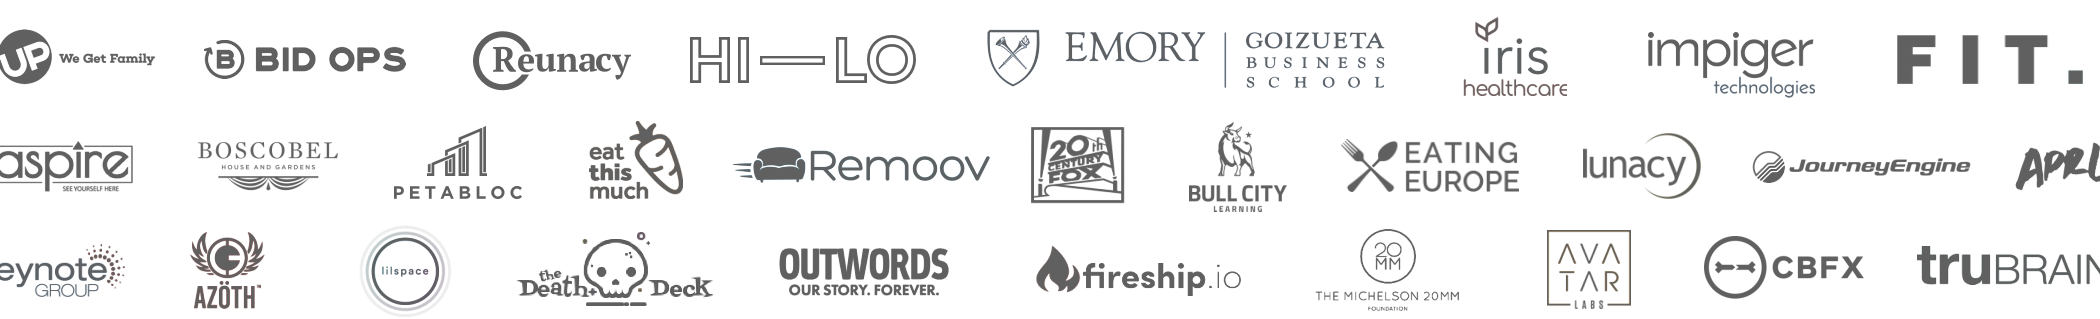 Map & Fire Client Logos